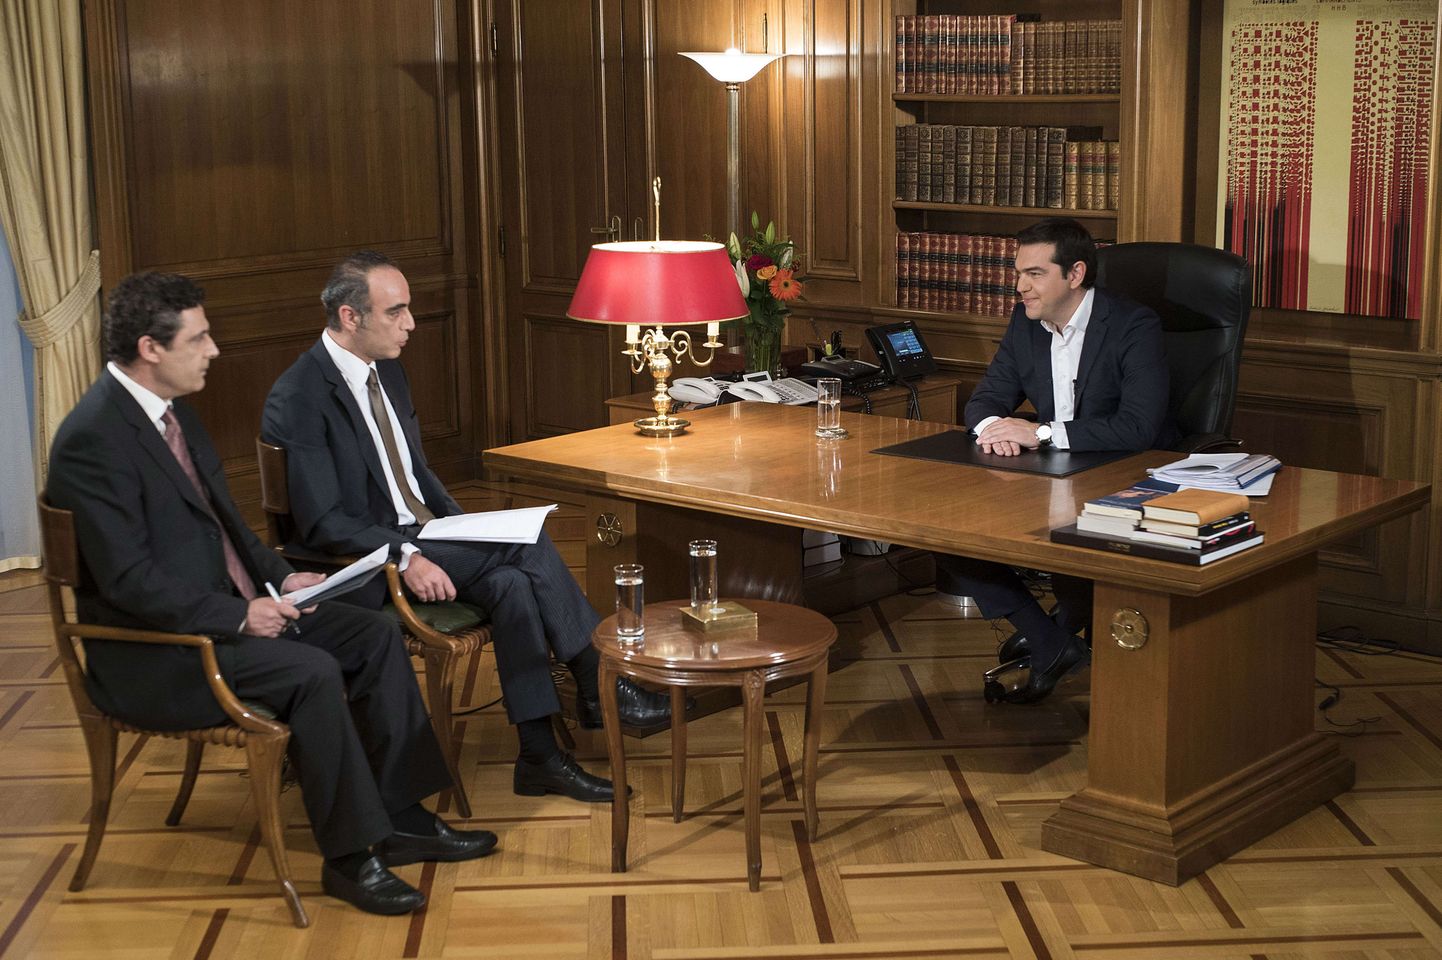 Kreeka peaminister Alexis Tsipras ajakirjanike küsimustele vastamas.